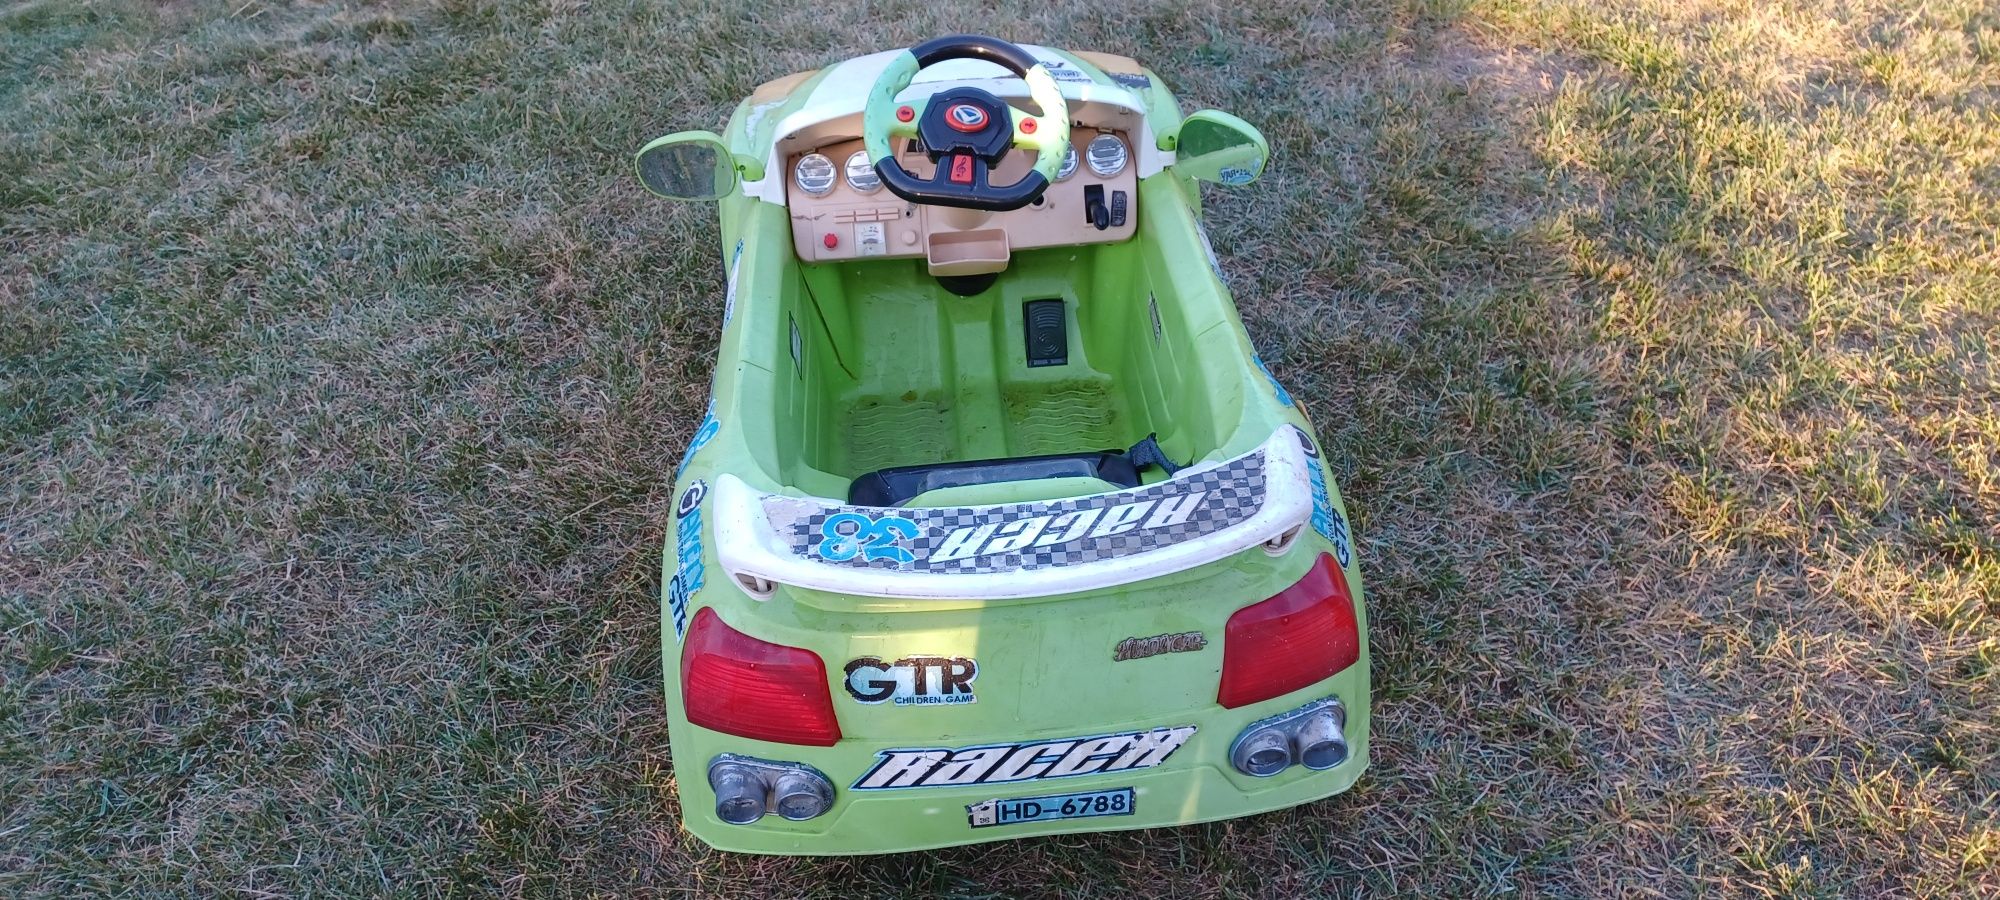 Samochód elektryczny dla dzieci